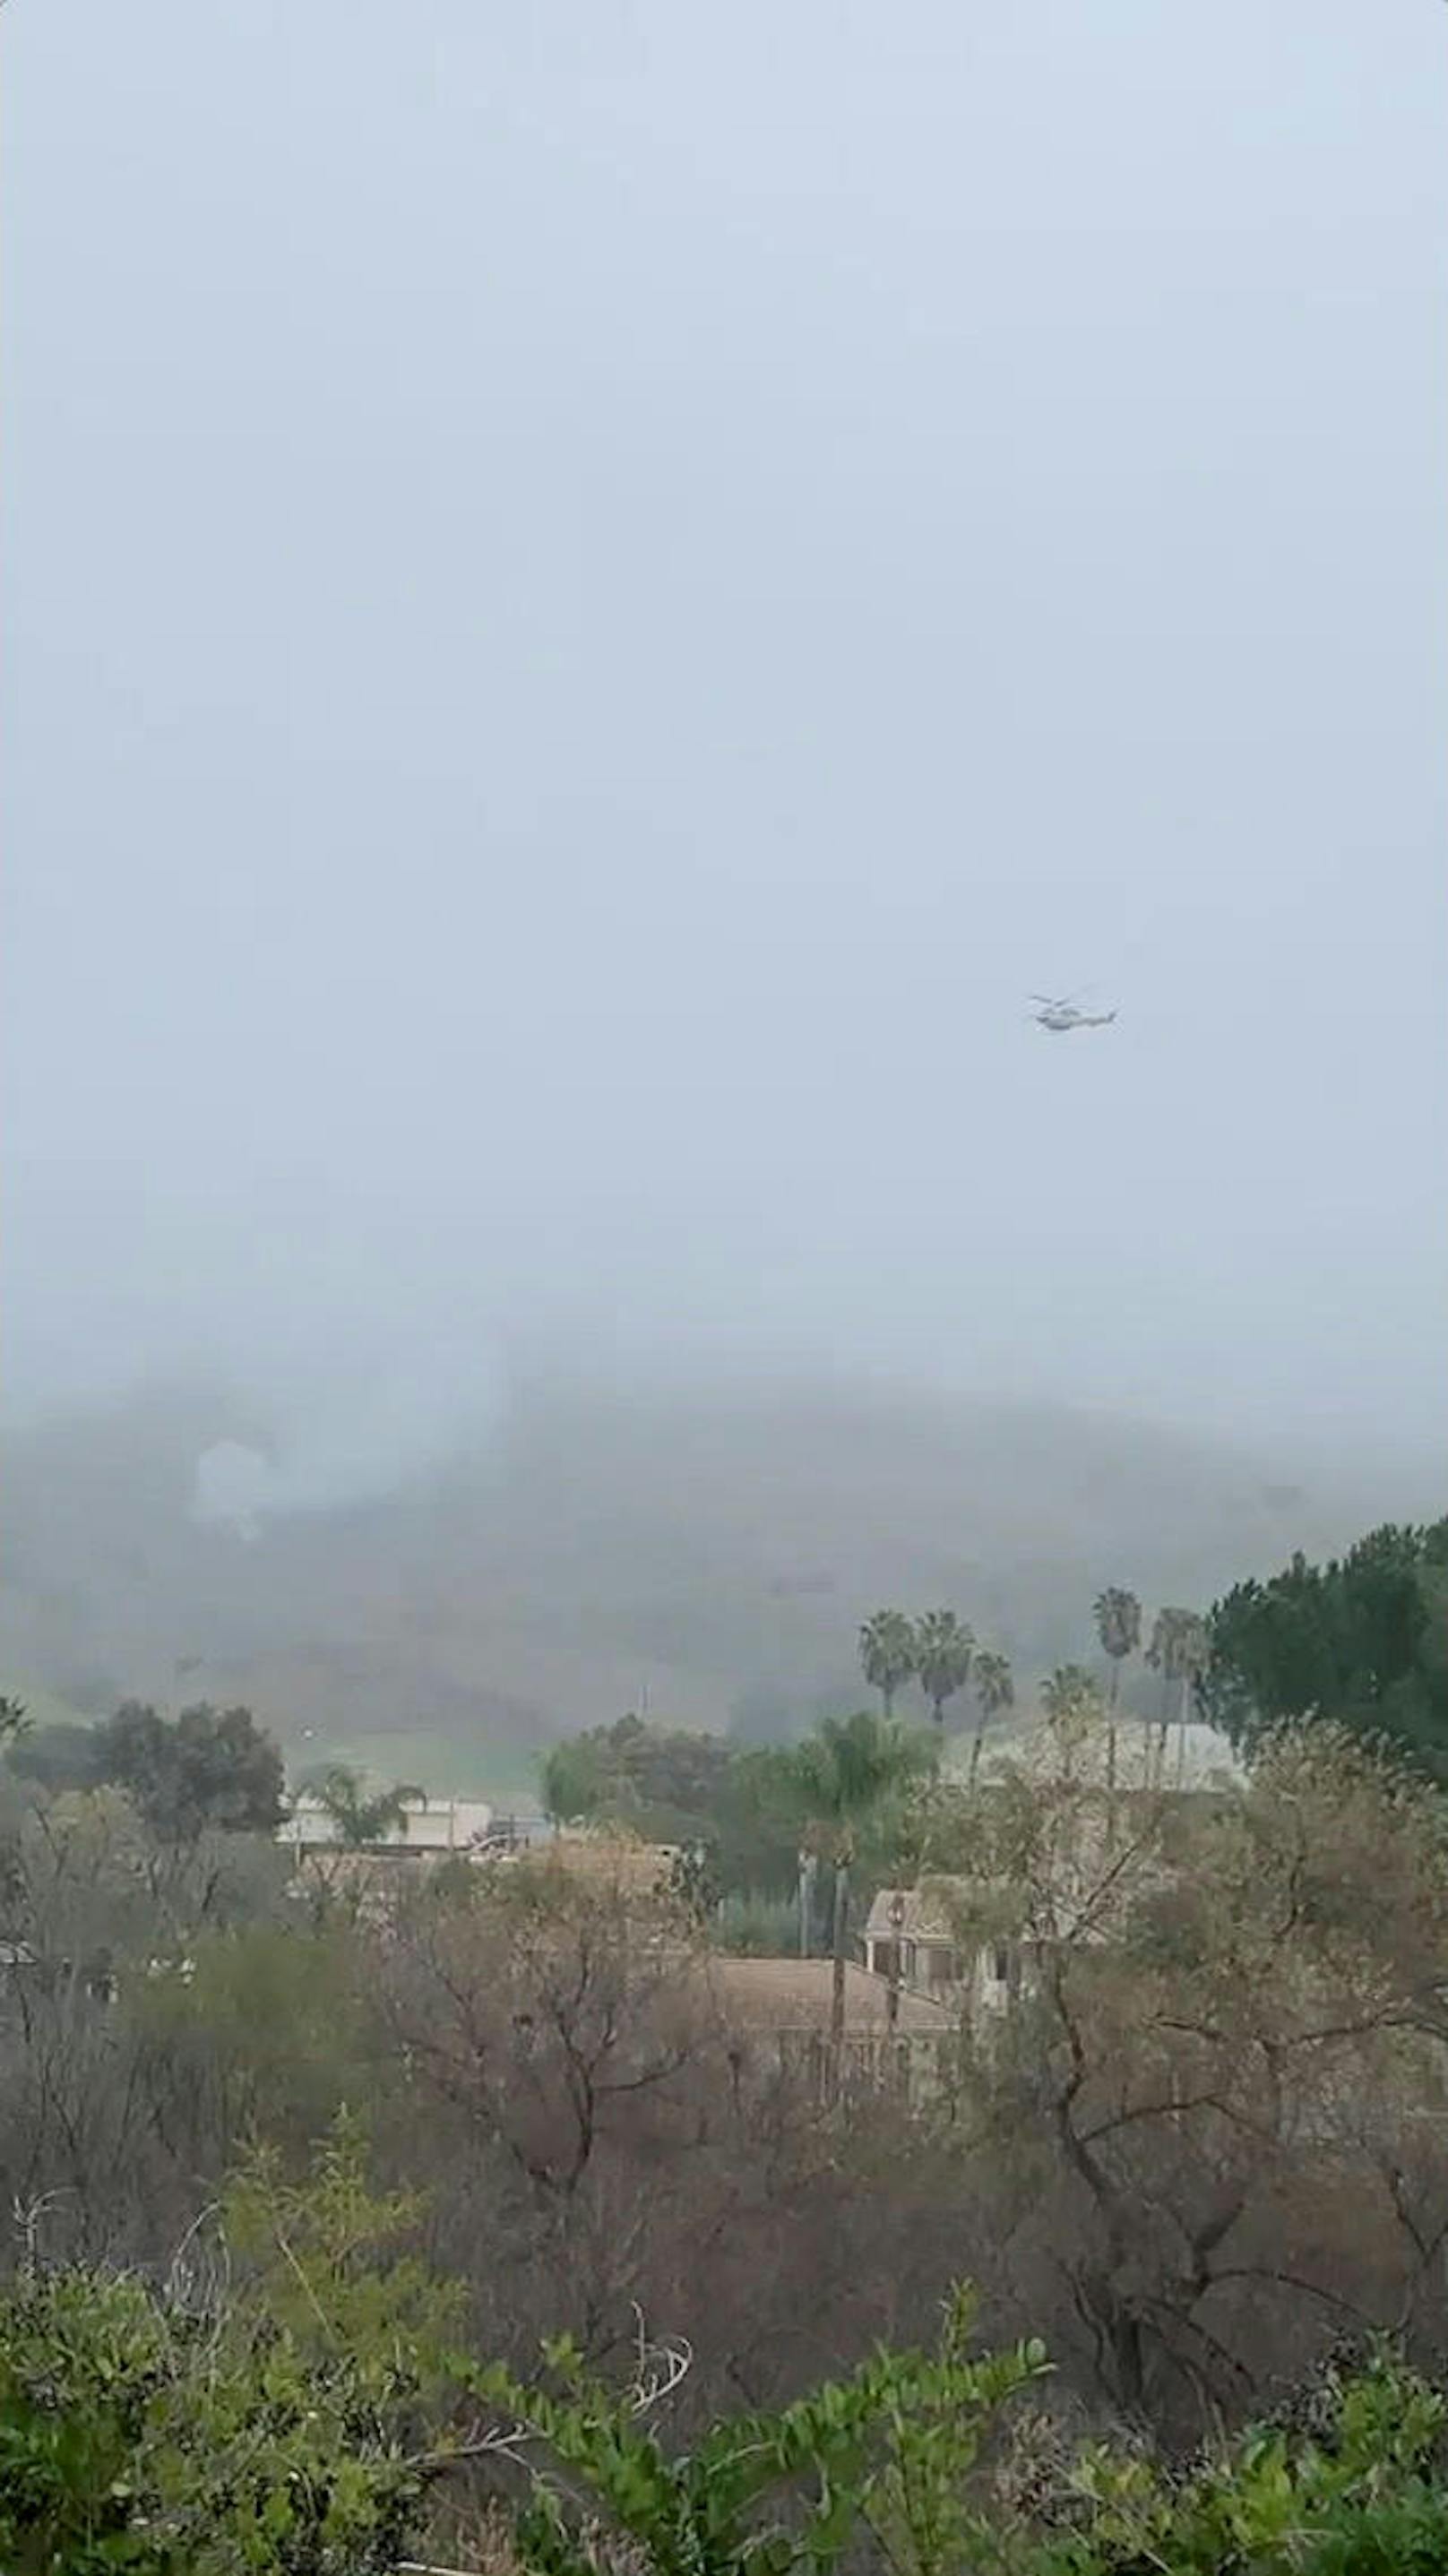 Ein Augenzeuge berichtete laut L.A.Times, "dass der Hubschrauber ungewöhnlich tief geflogen und im Nebel verschwunden sei, danach habe es einen großen Feuerball gegeben".